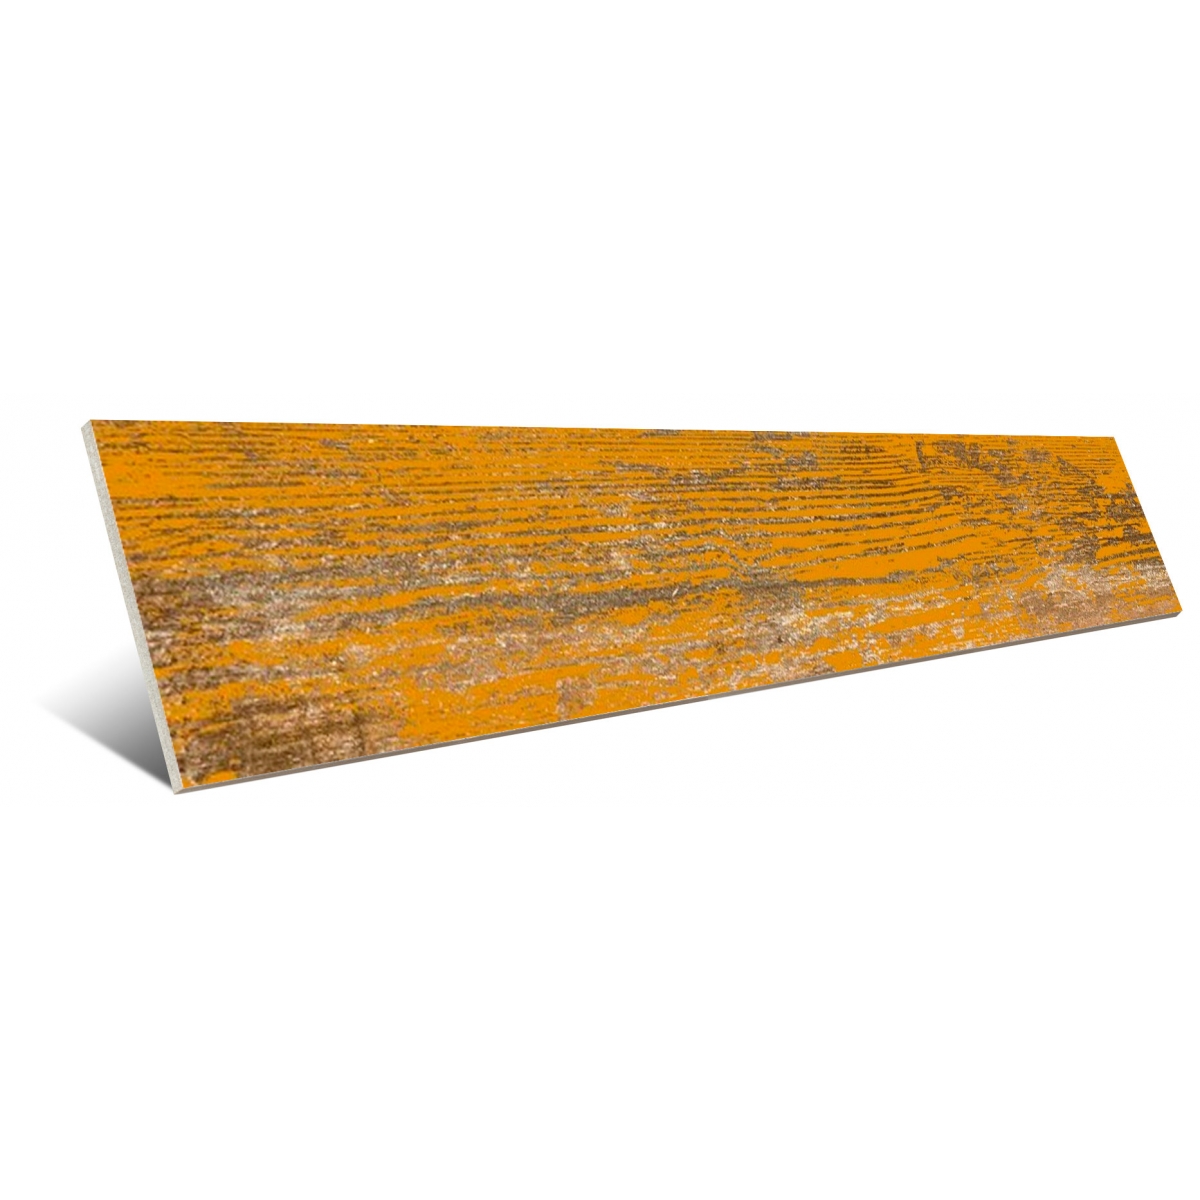 Pavimentos imitación madera Vives - Faro Yugo-R Albero 14,4x89,3 cm (caja 1.29 m2)